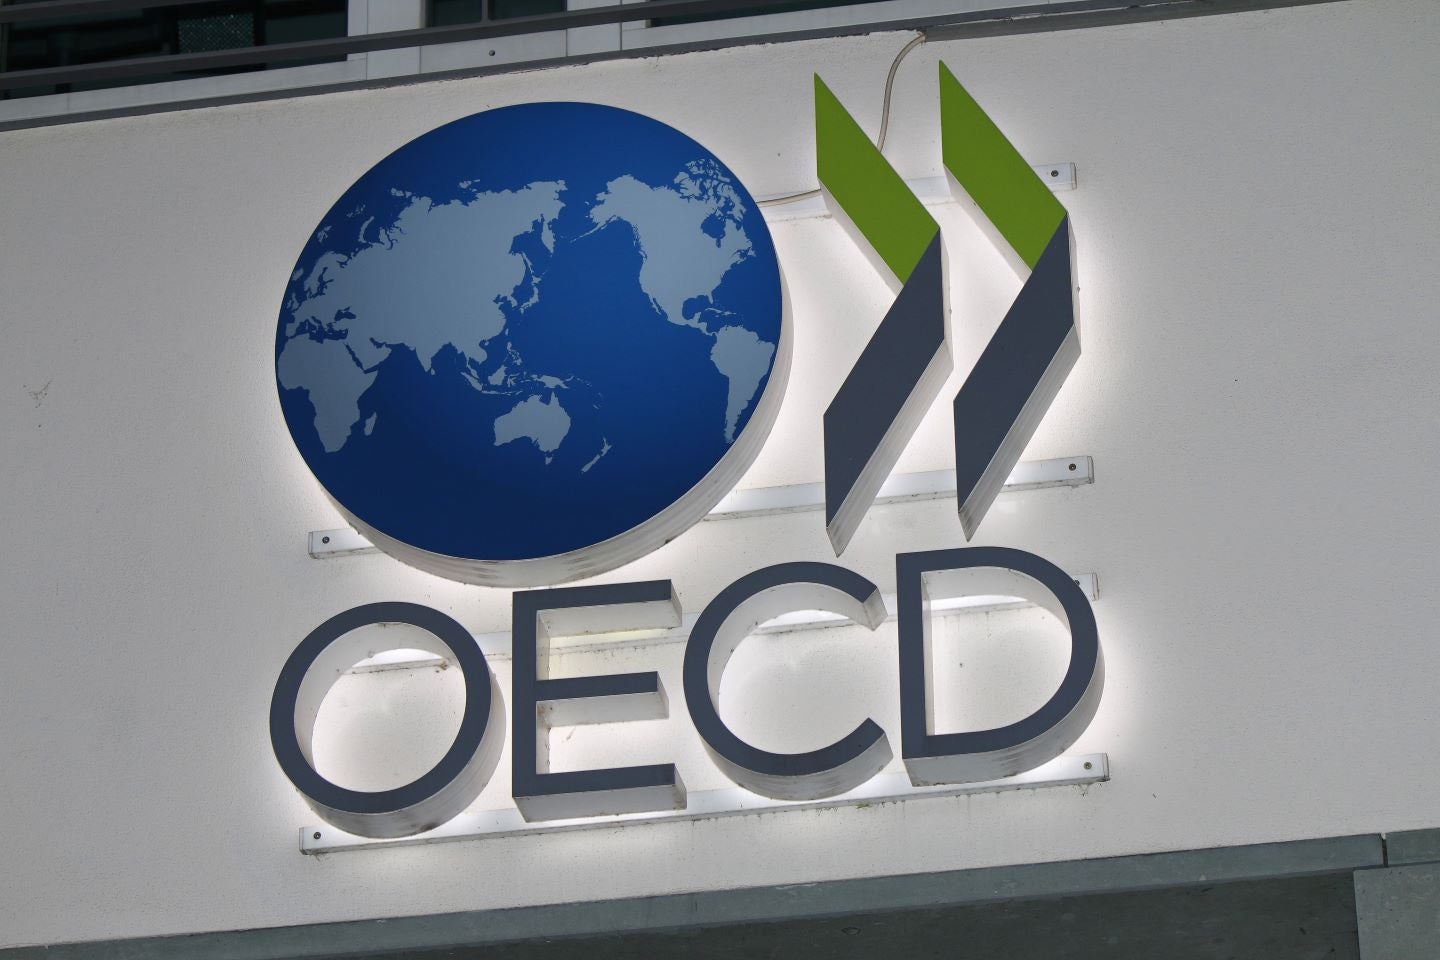 Области экономического сотрудничества. ОЭСР. Организация экономического сотрудничества и развития. ОЭСР эмблема. Организация экономического сотрудничества и развития (ОЭСР).